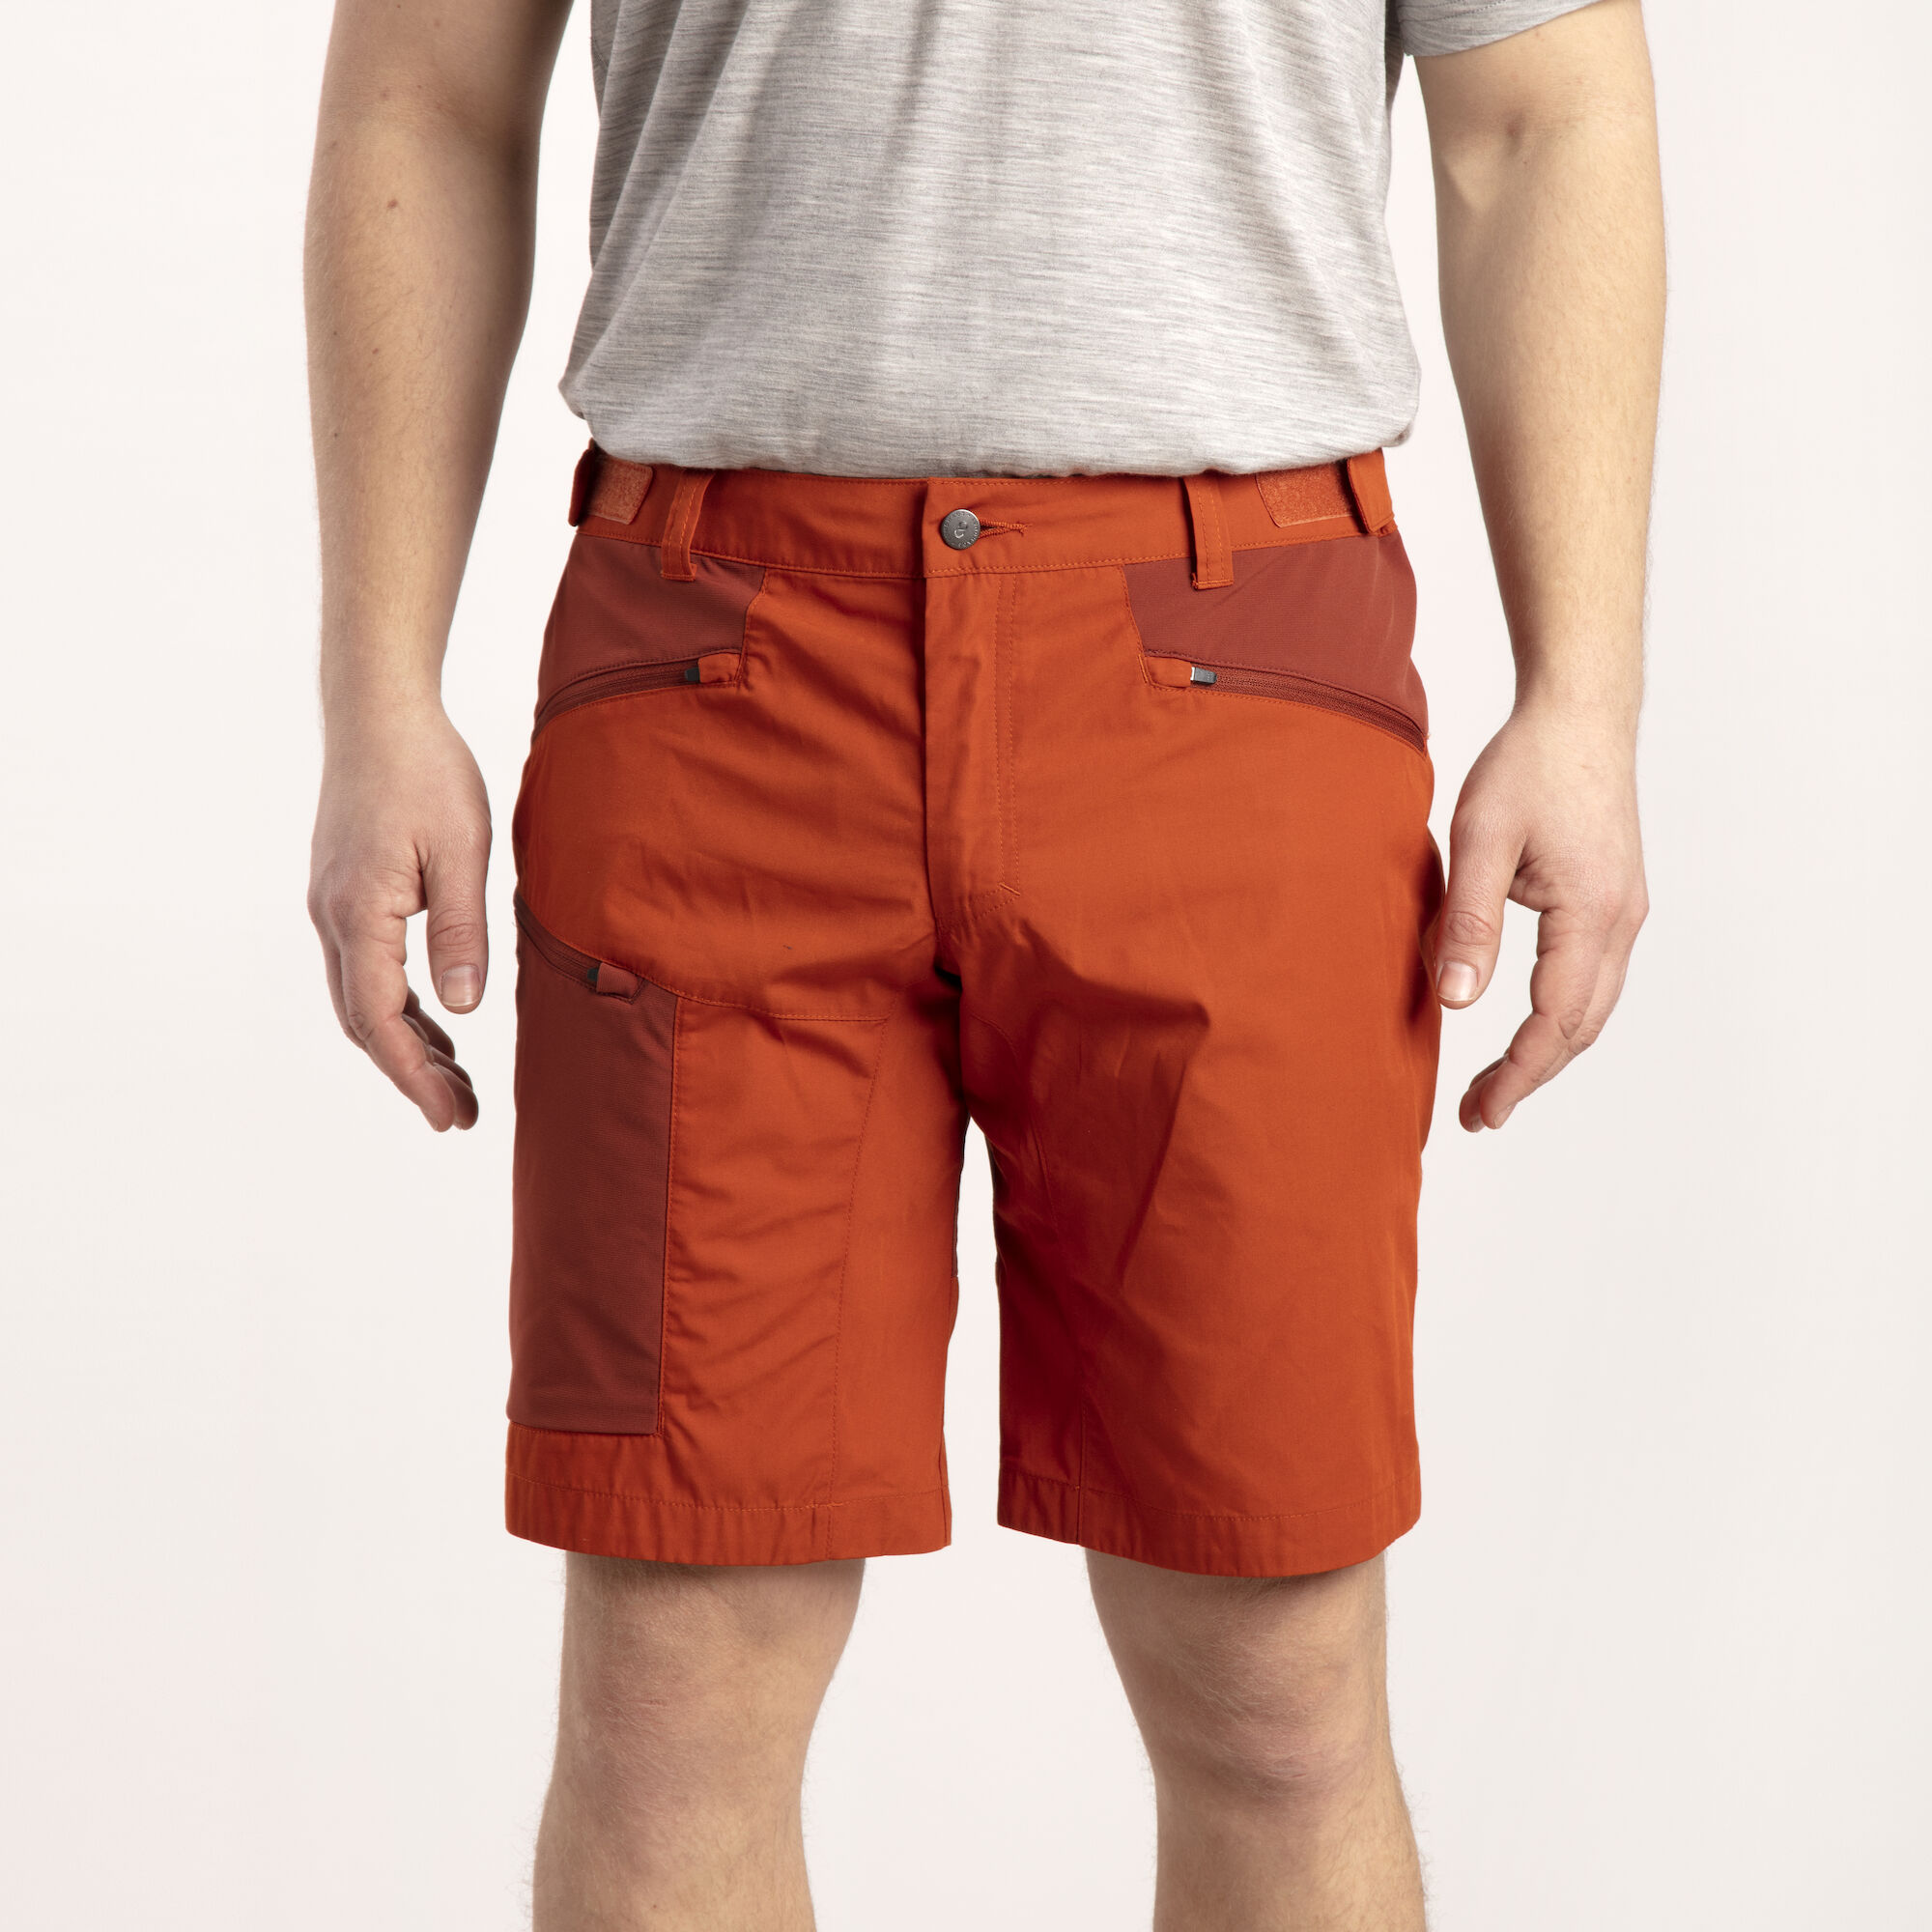 A man wearing orange shorts.